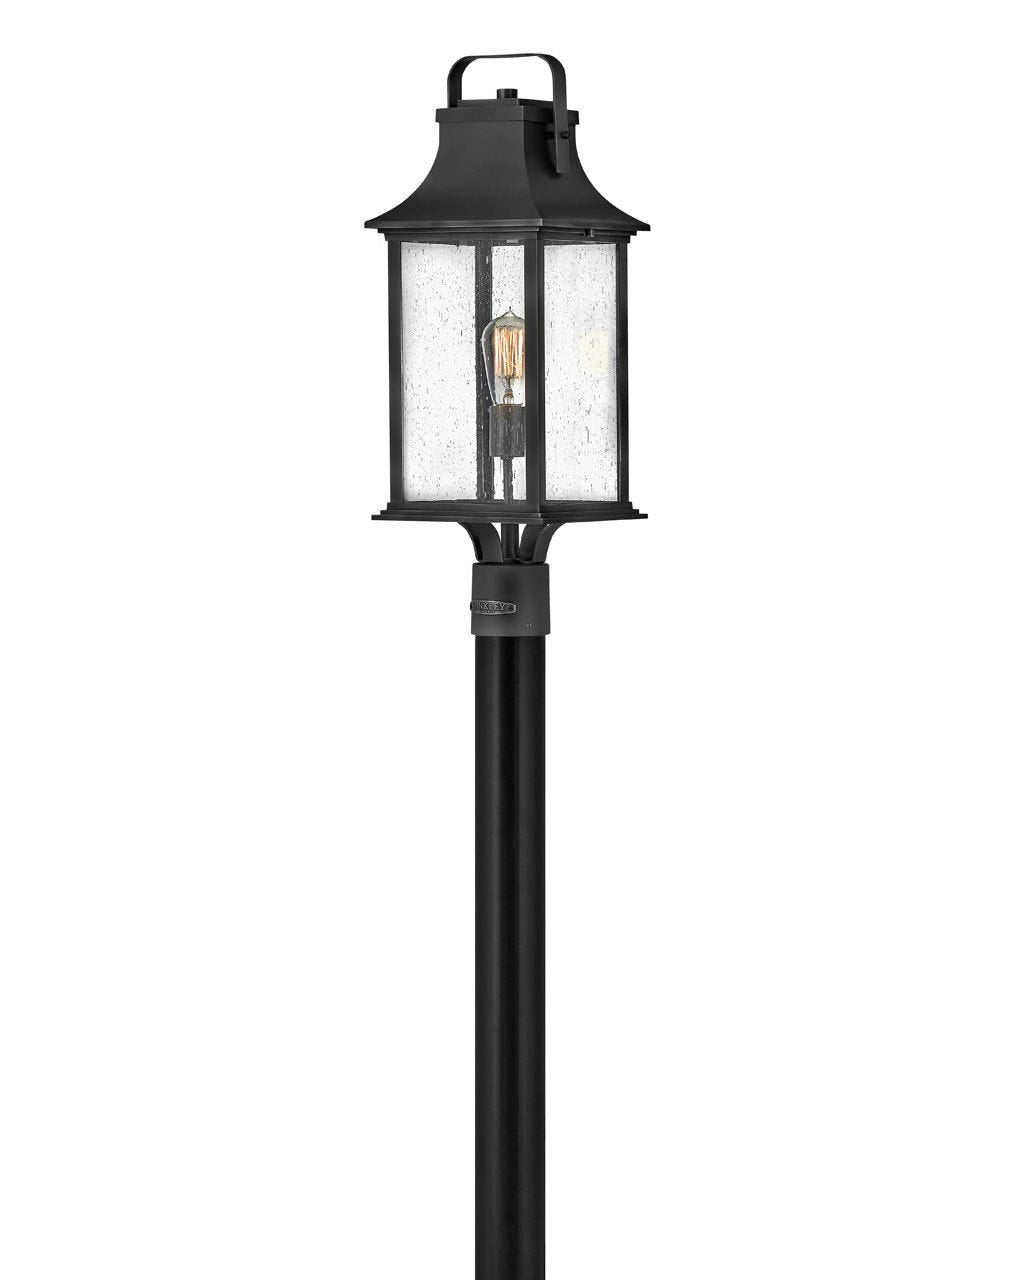 Grant Medium Post Mount Lantern-Hinkley Lighting-HINKLEY-2391TK-Flush MountsTextured Black-2-France and Son